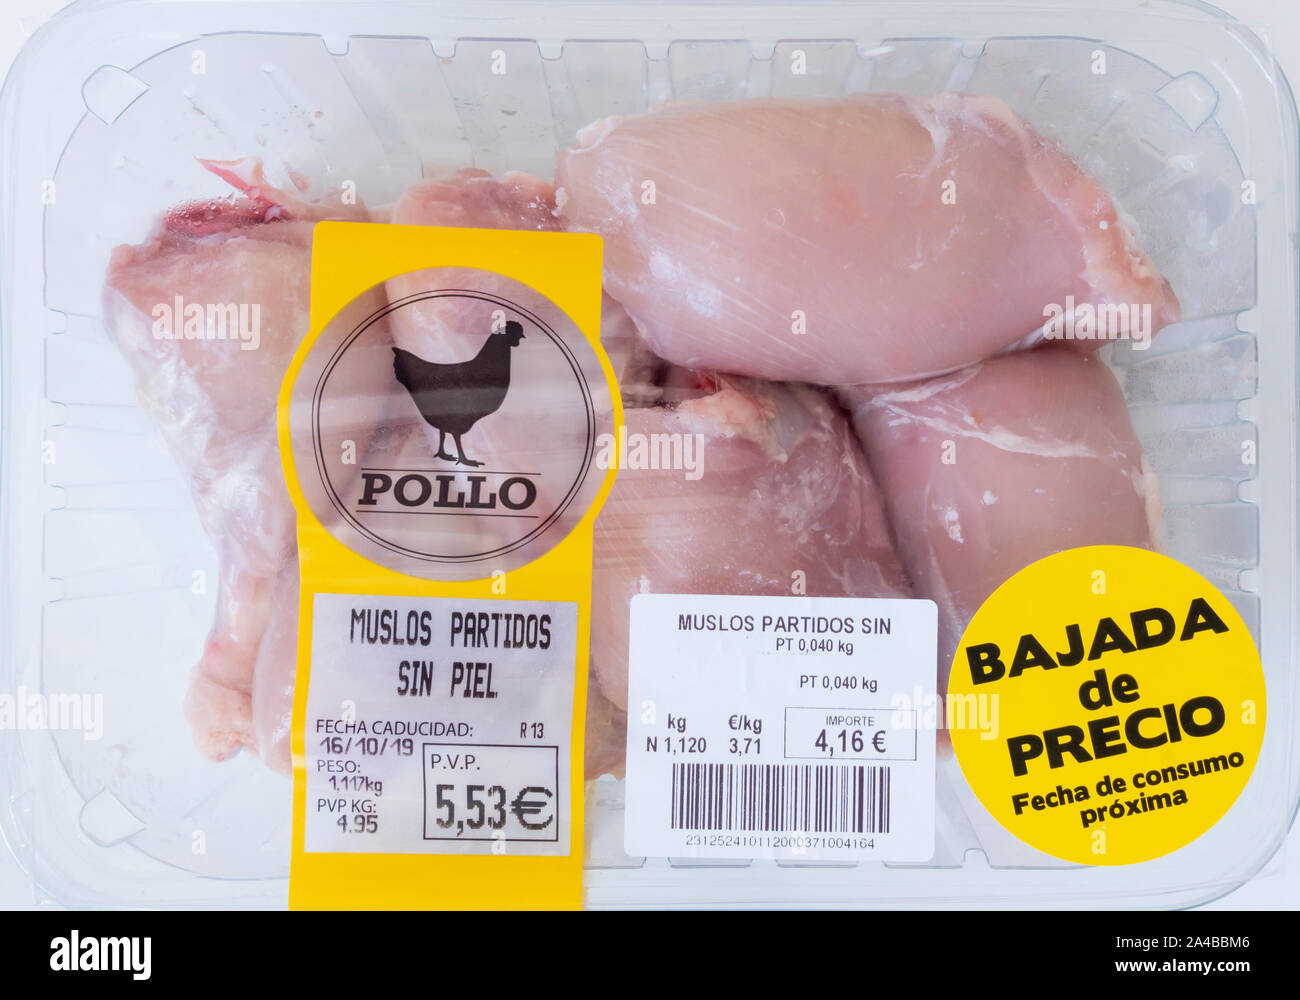 Fresche, pollo senza pelle thighes confezionato in imballaggi di plastica con prezzo ridotto adesivo in un supermercato in Spagna. Foto Stock